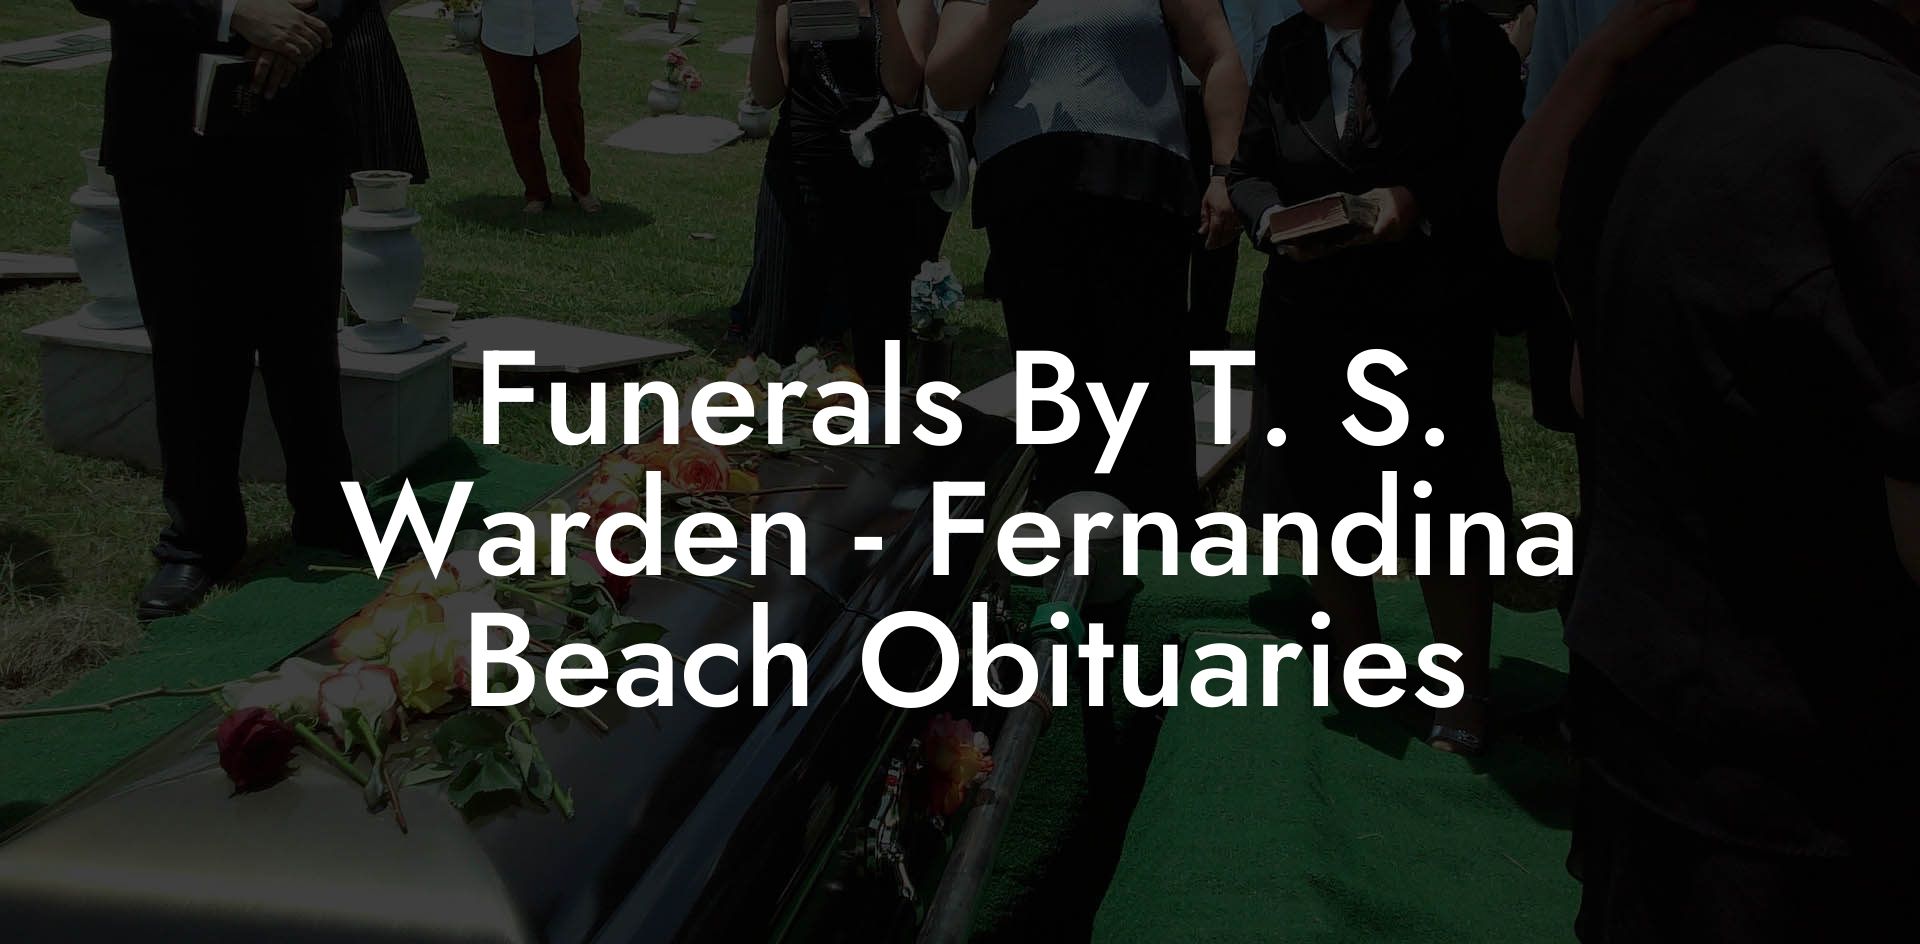 Funerals By T. S. Warden - Fernandina Beach Obituaries